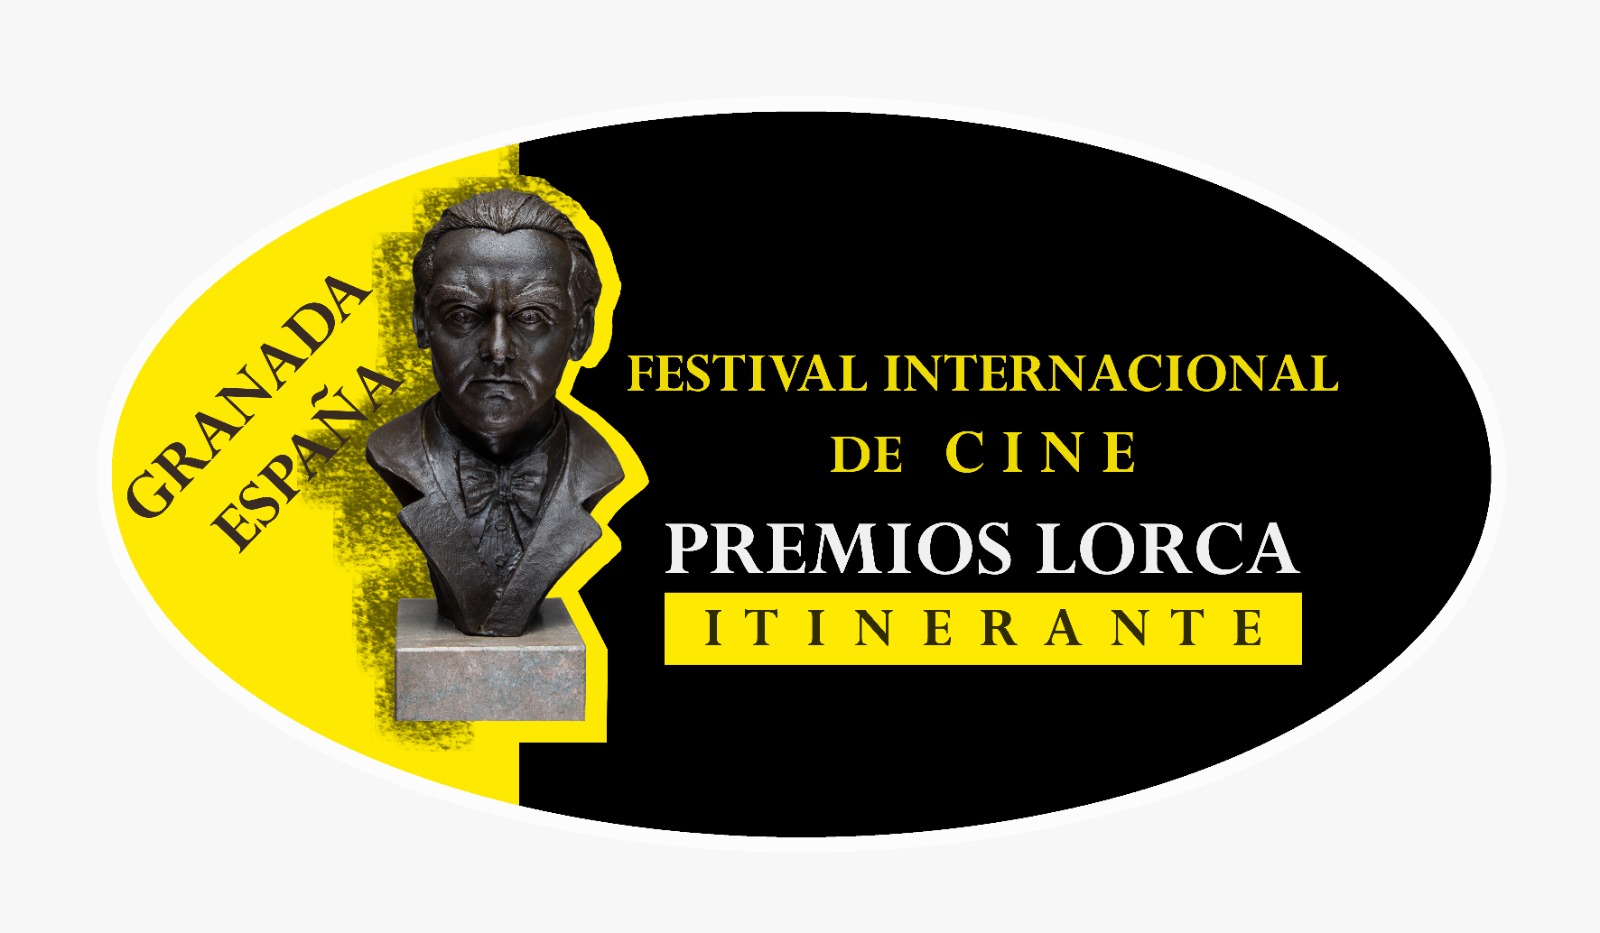 مهرجان غرناطة السينمائي “بريميوس لوركا” يؤطر ورشات تكوينية